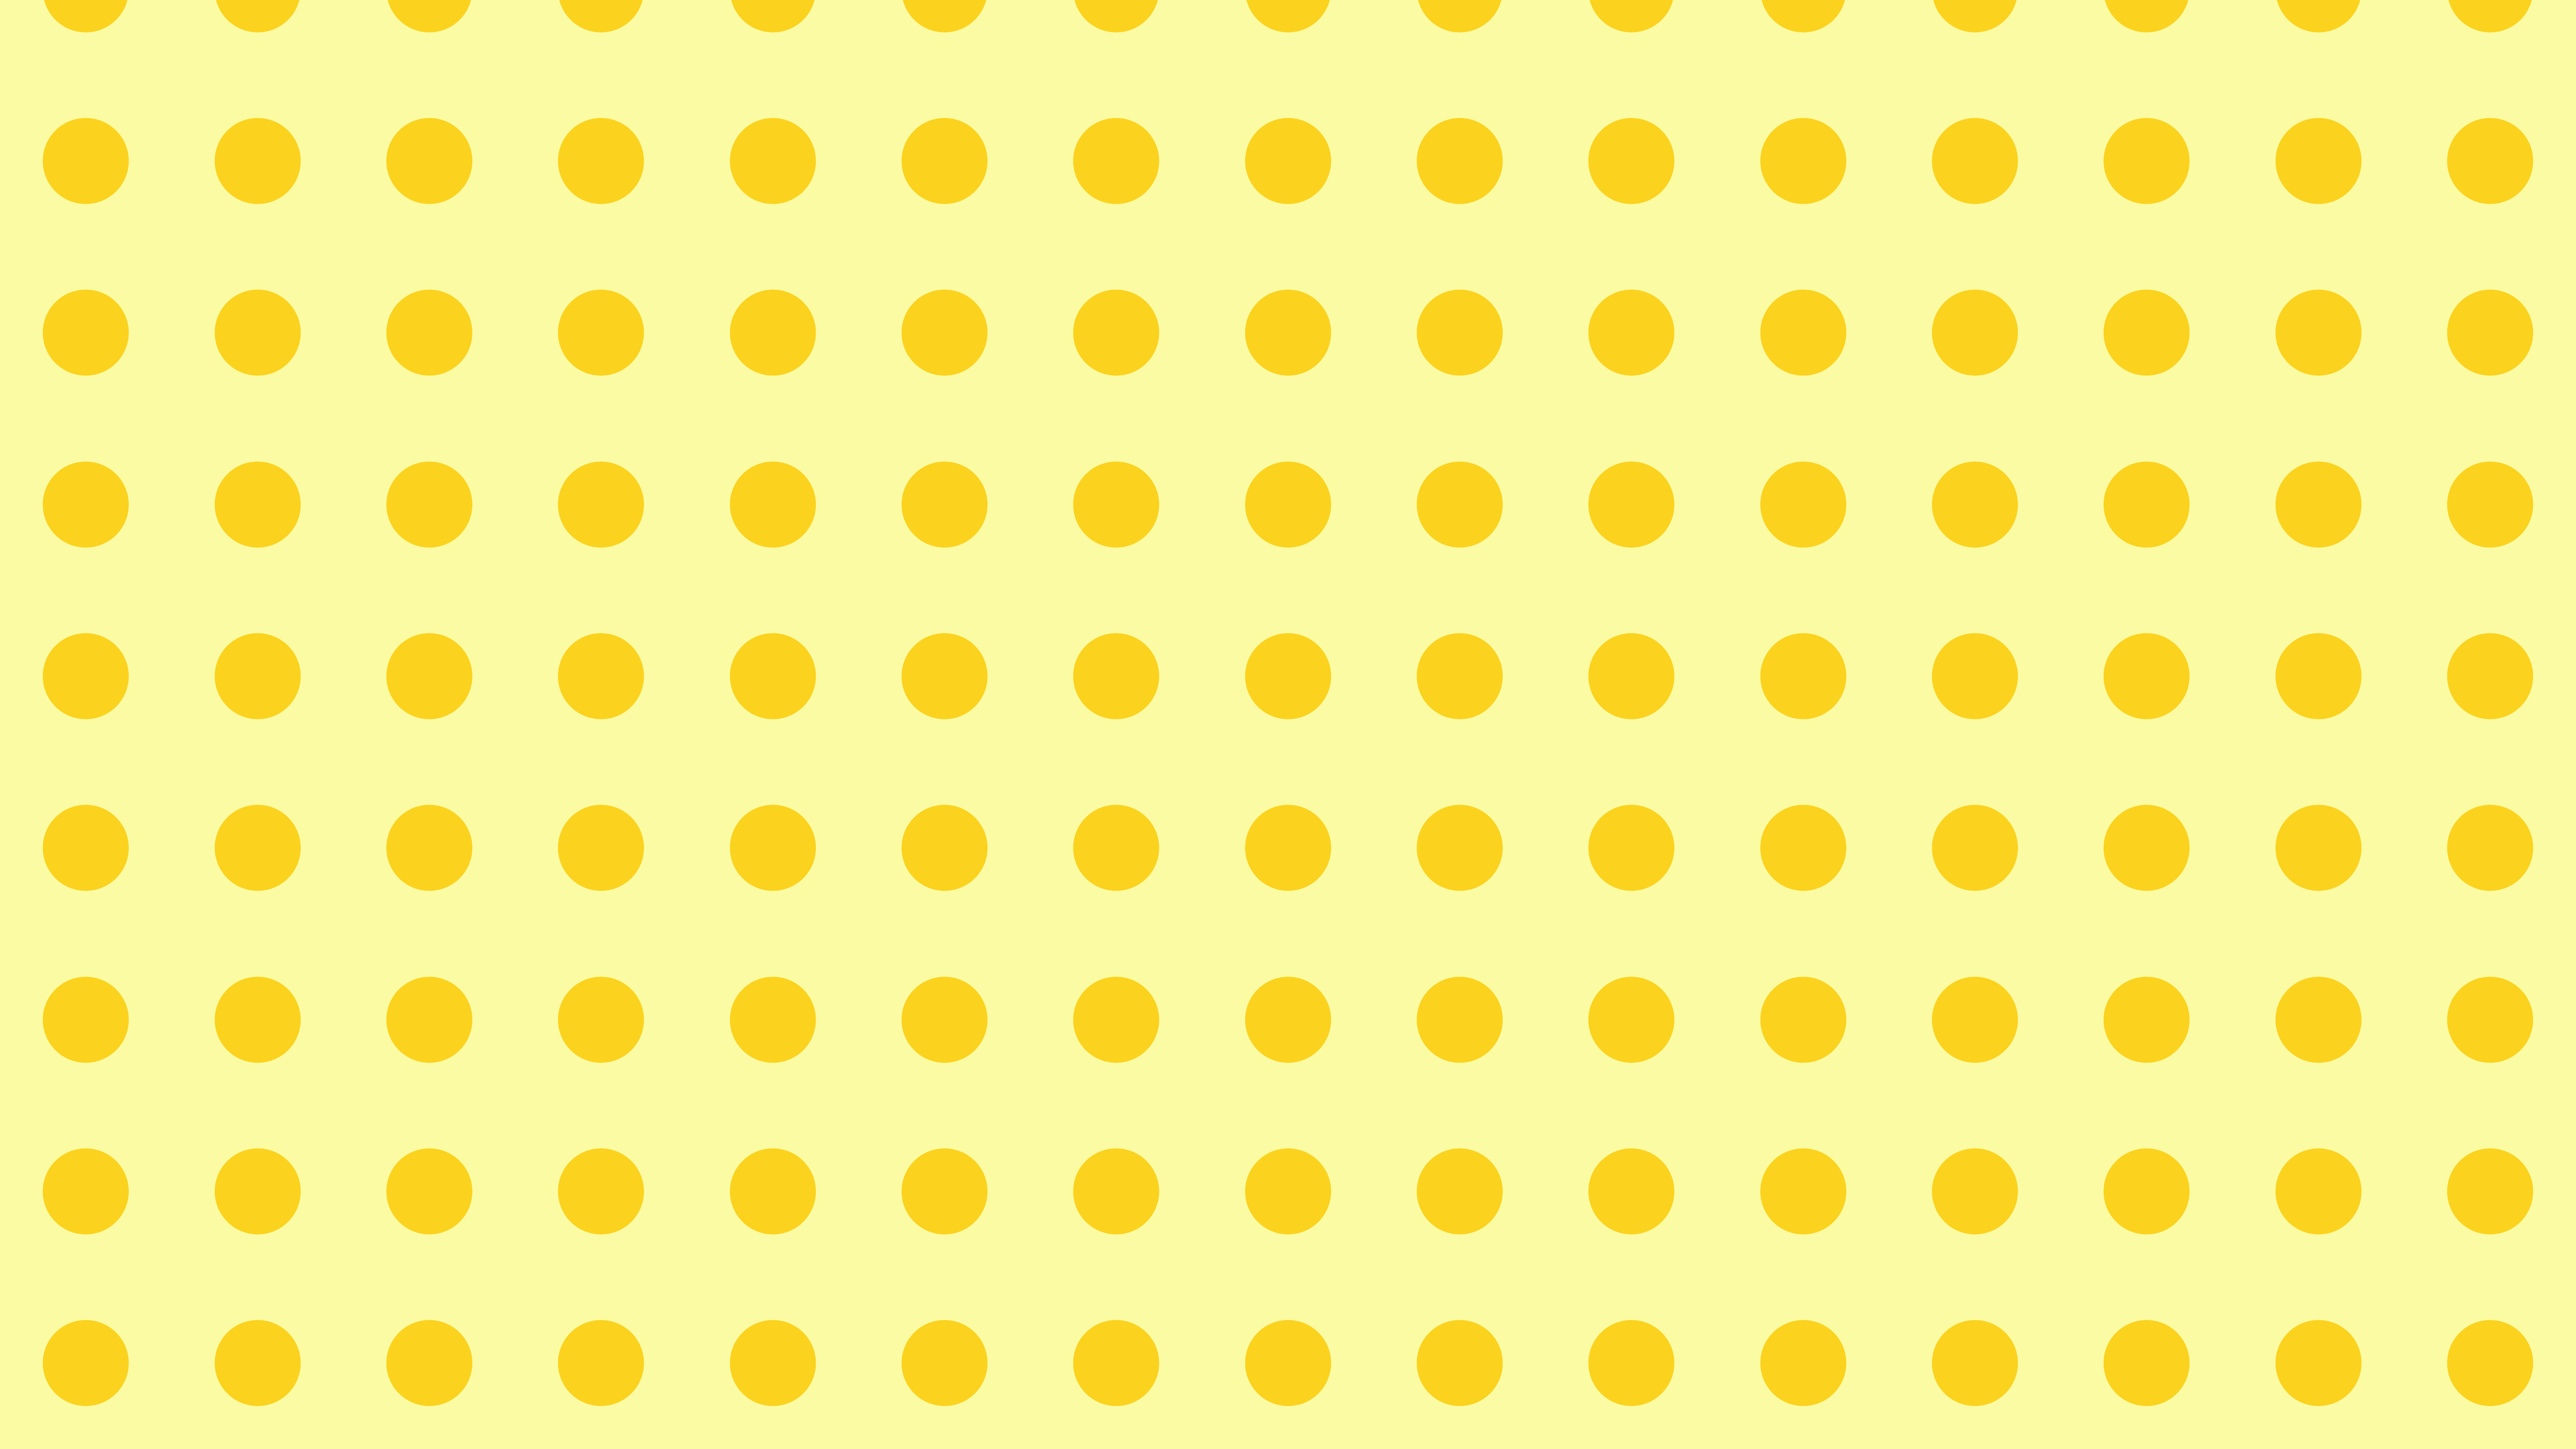 Free Yellow Seamless Circle Pattern Background Image